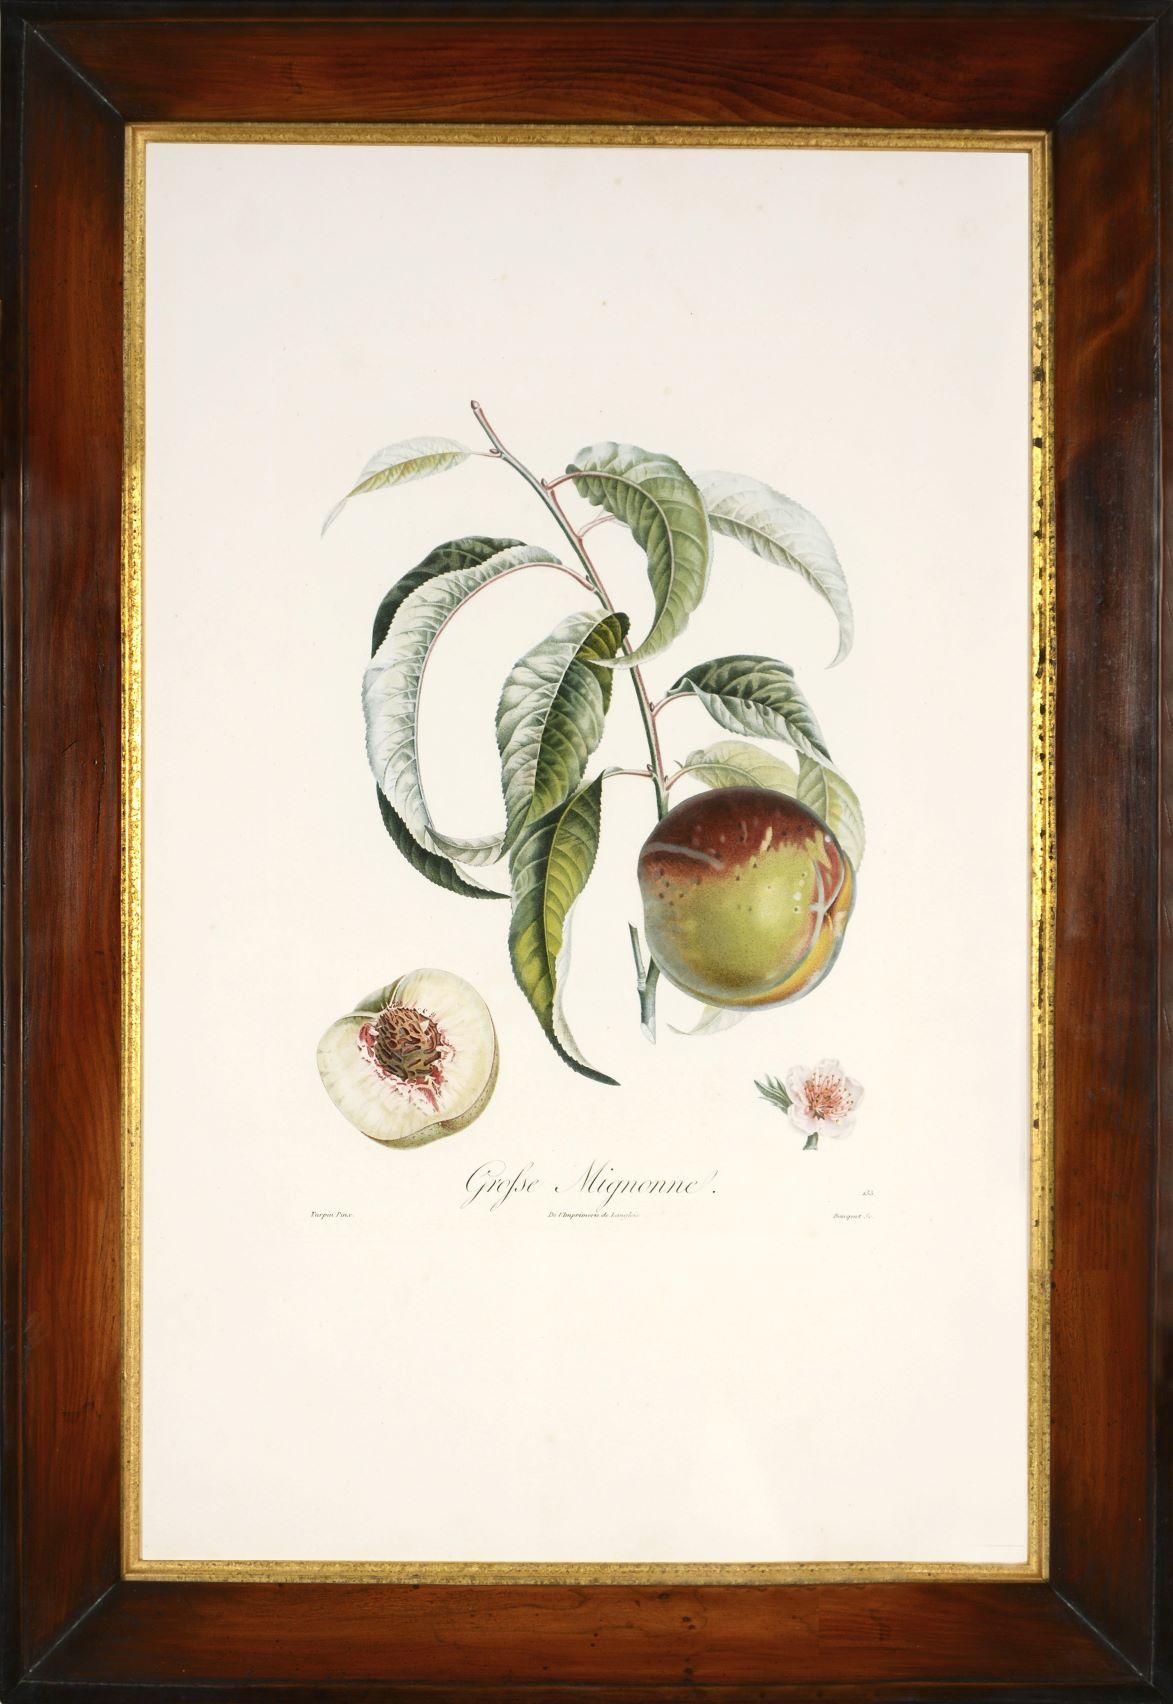 POITEAU/TURPIN. Traité des arbres fruitiers: Ein Satz von vier Pfirsichen (Weiß), Still-Life Print, von POITEAU, A. and P. TURPIN.   